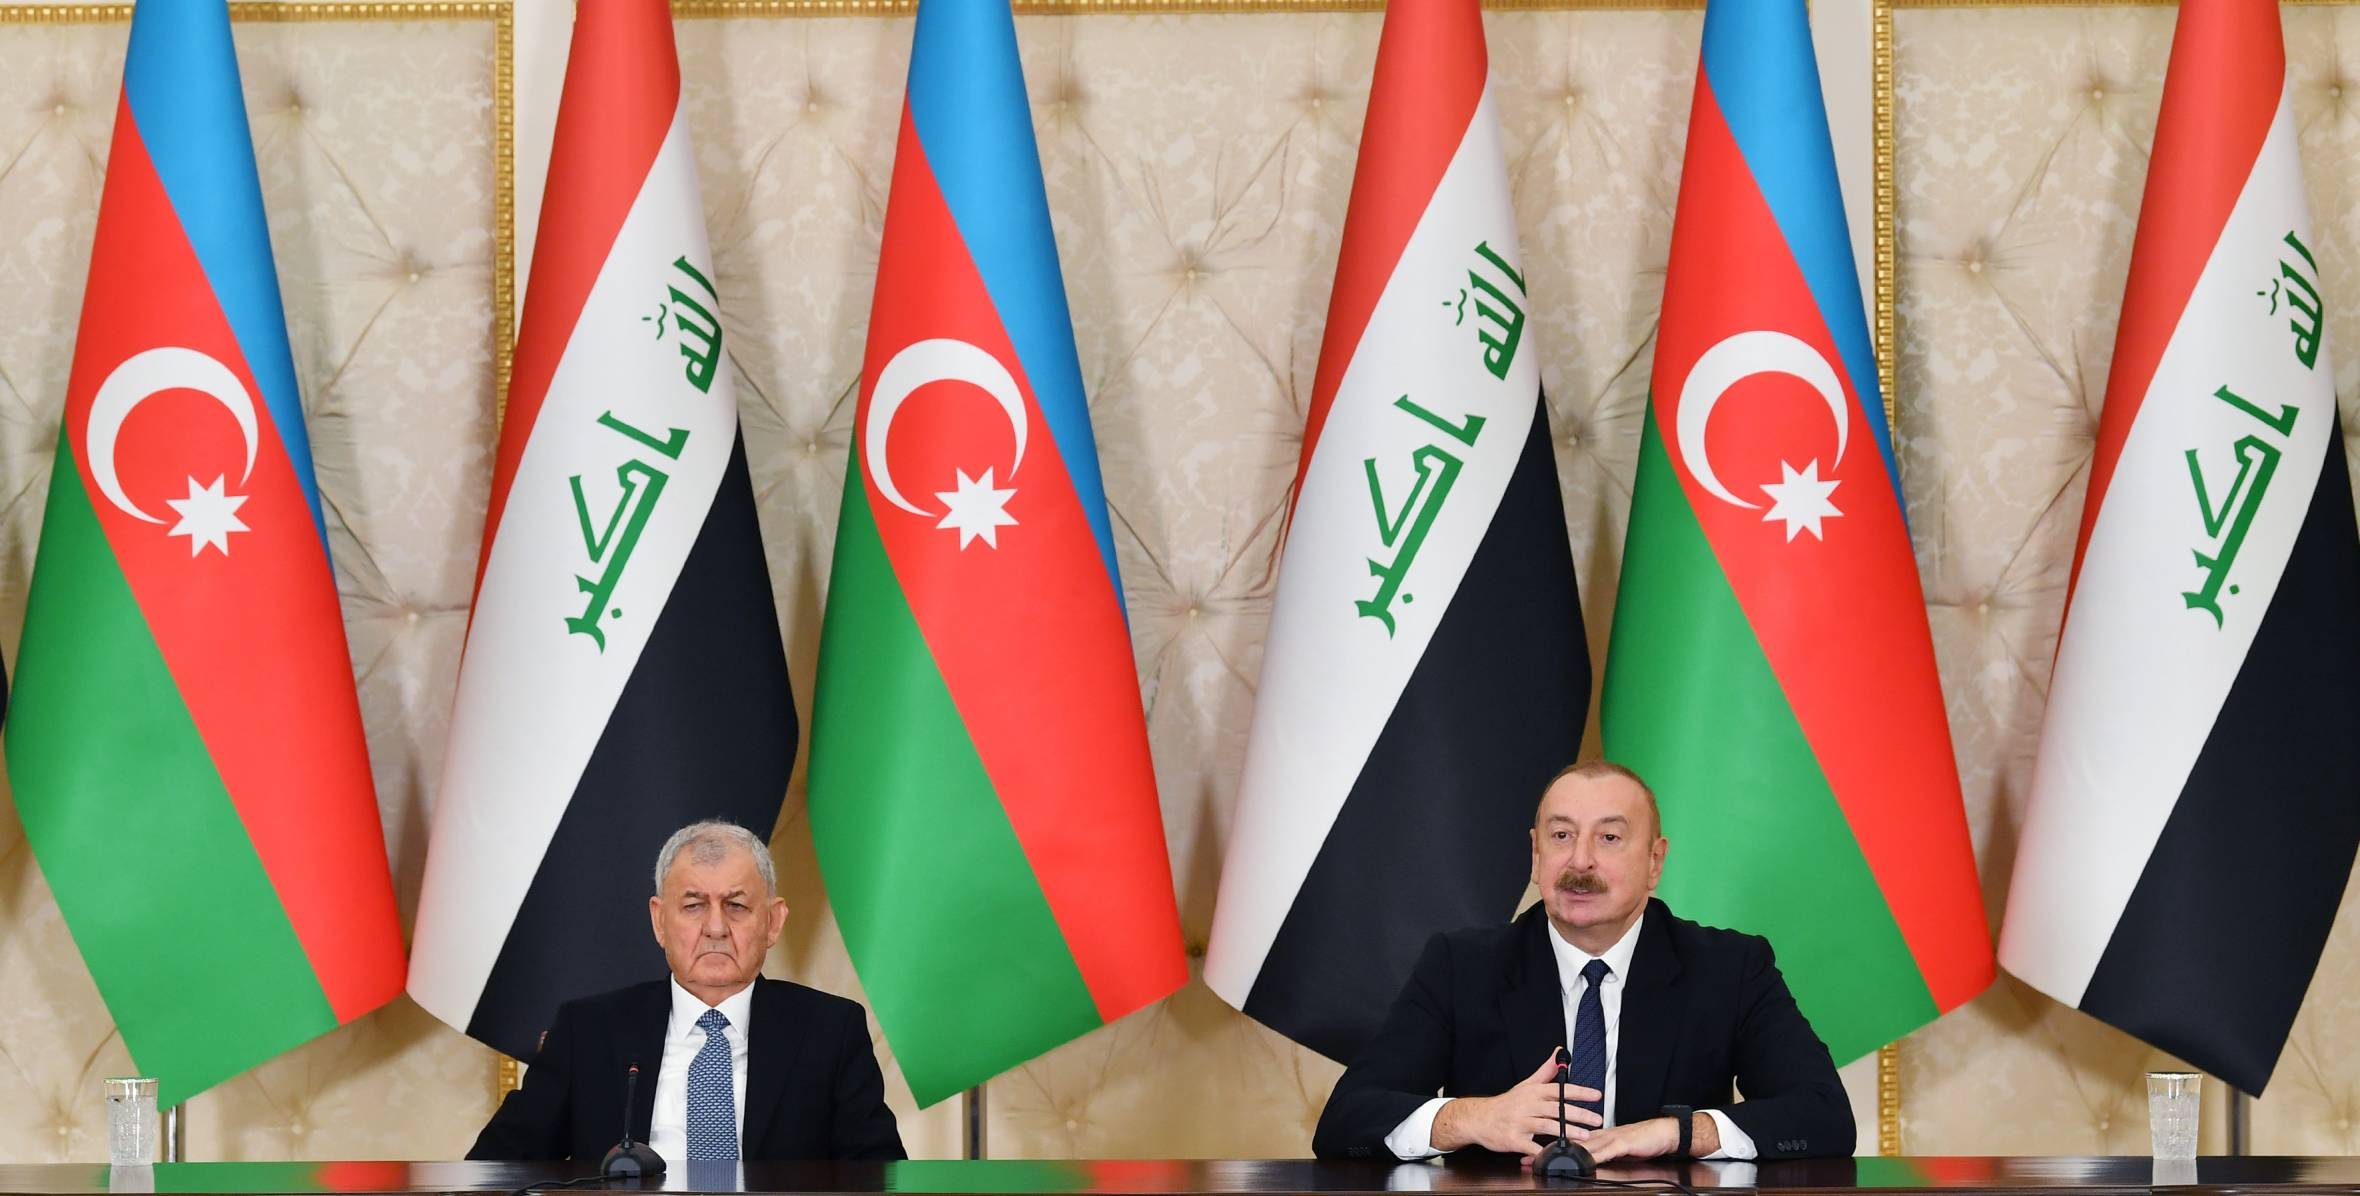 Президенты Азербайджана и Ирака выступили с заявлениями для прессы